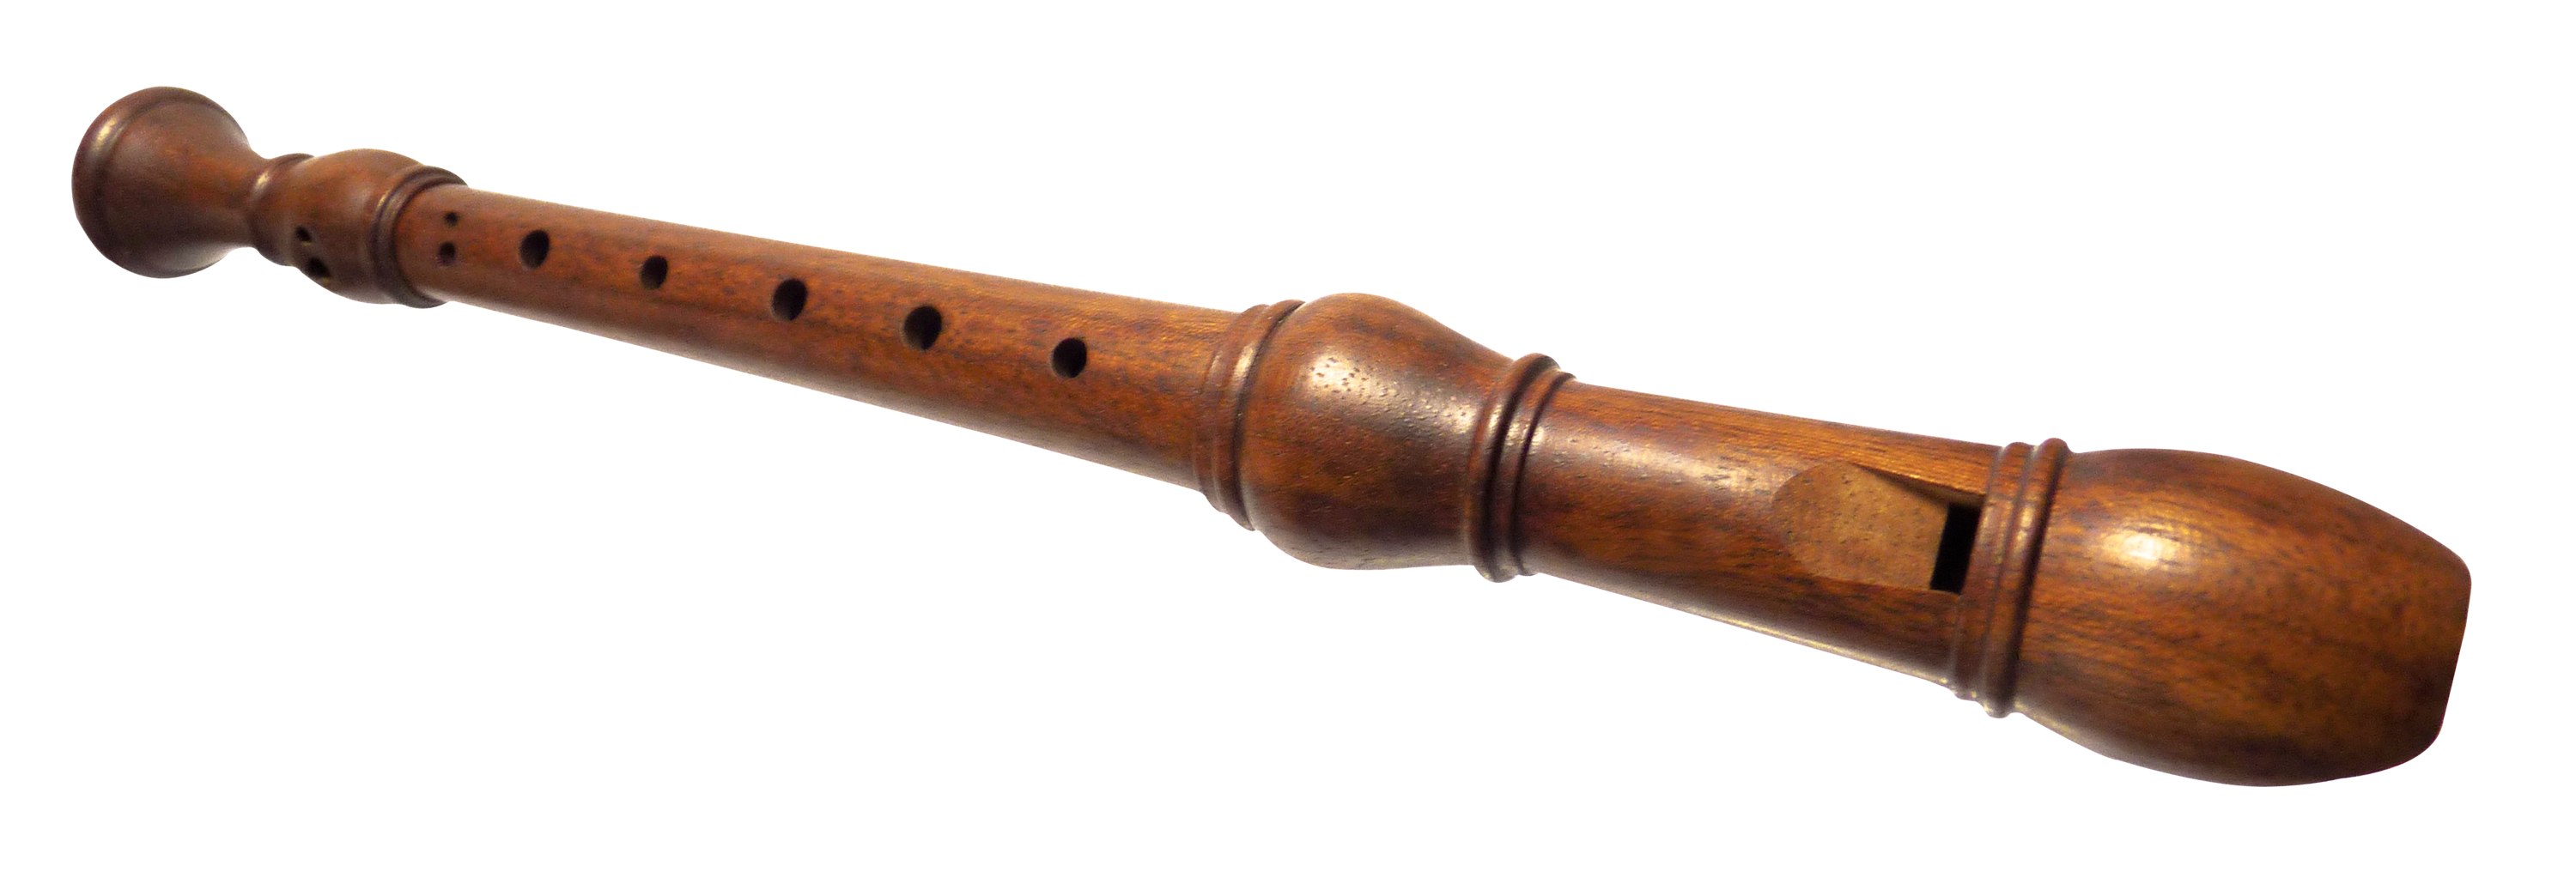 Wooden Flute PNG Image